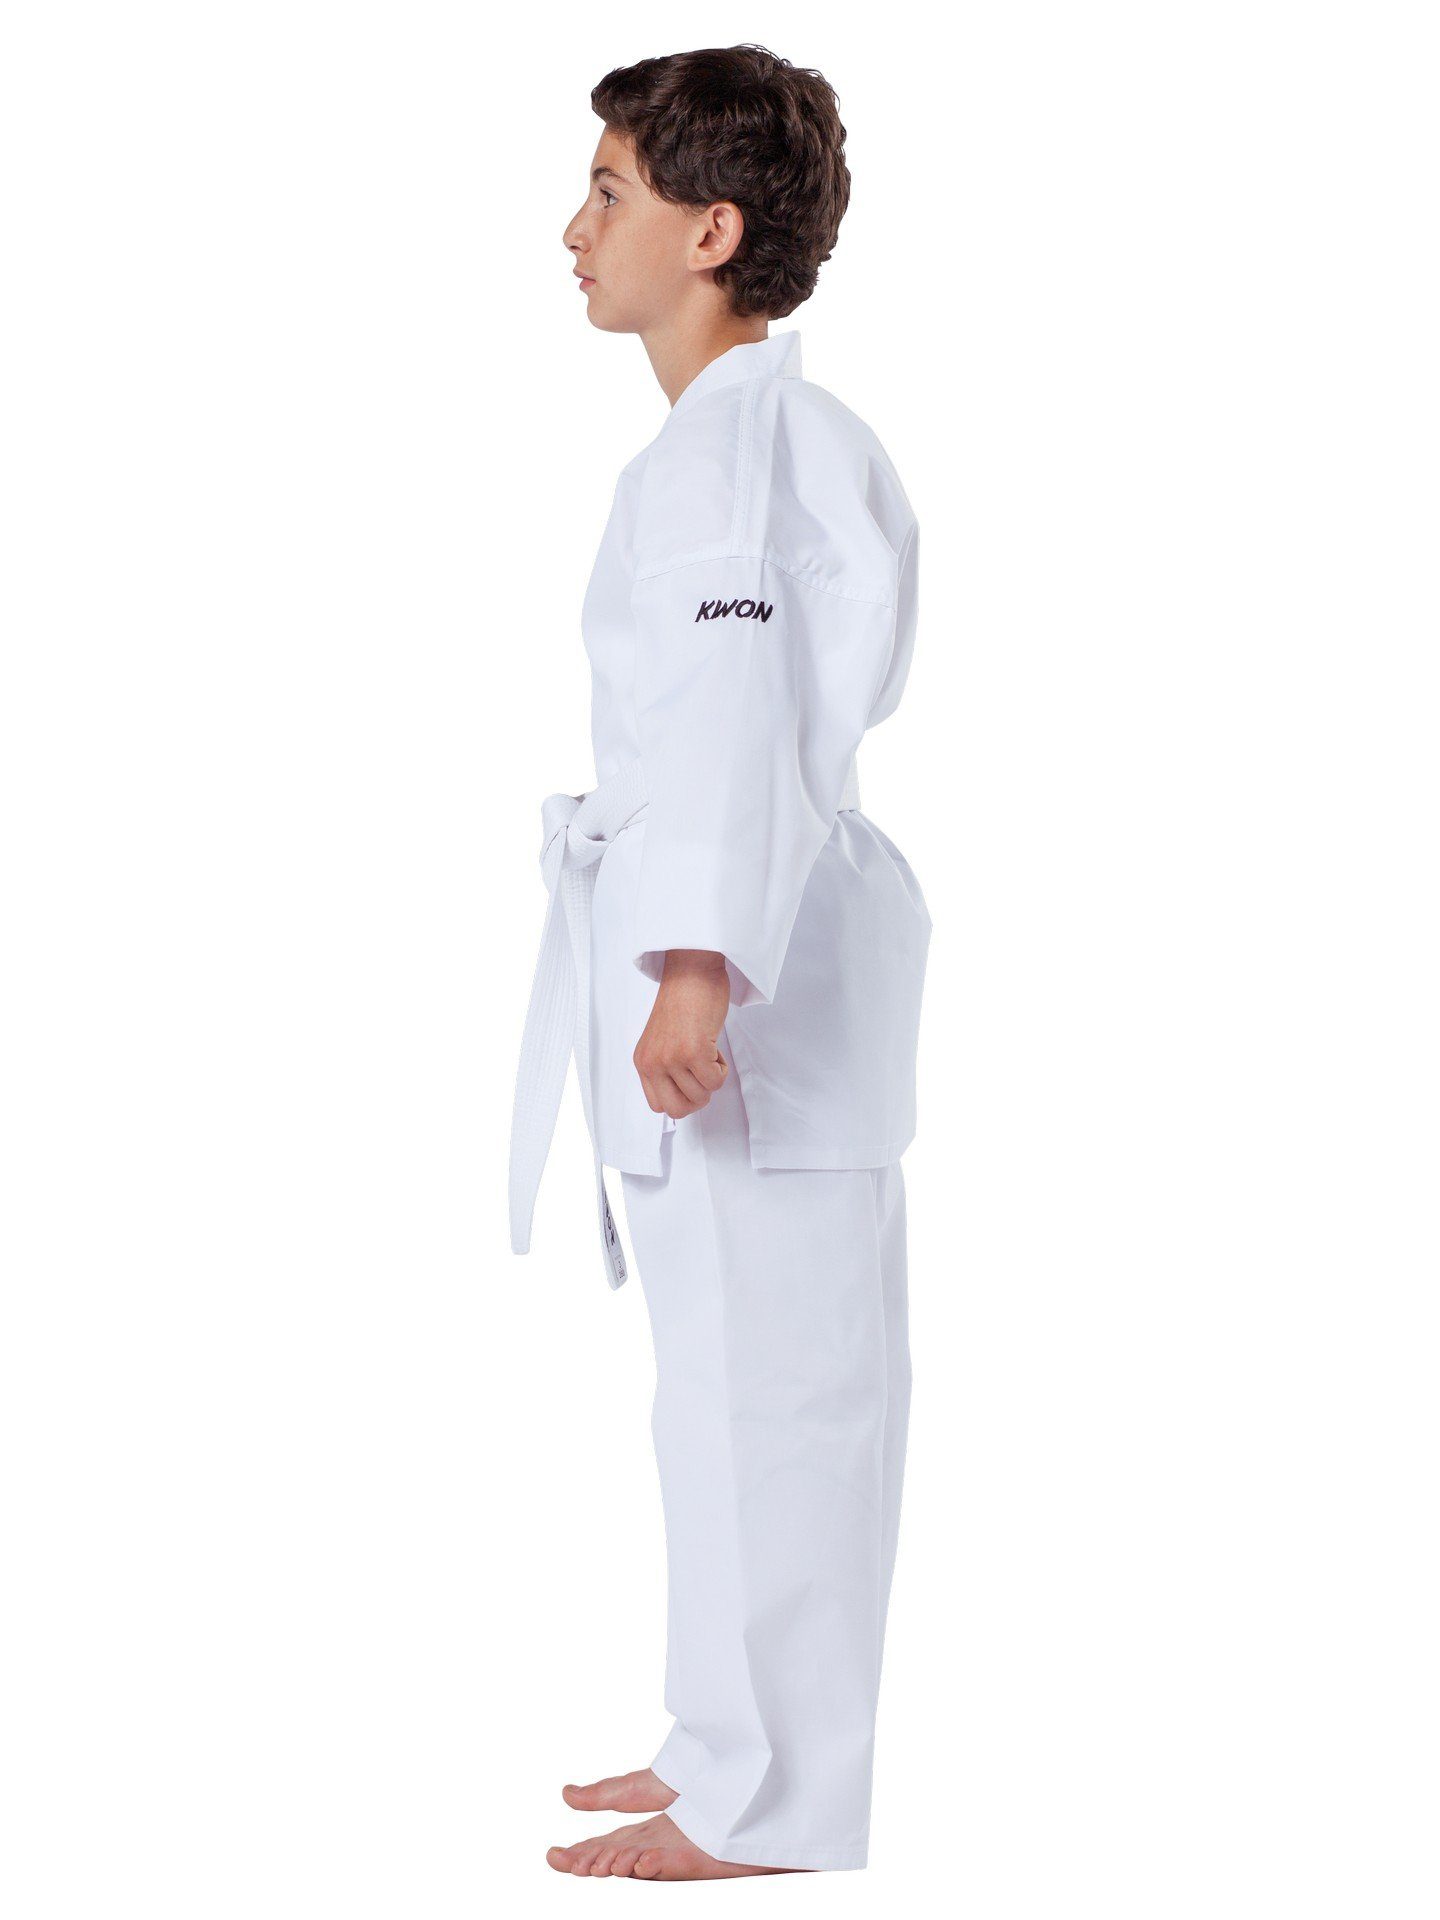 KWON Karateanzug Basic und inkl Model Einsteiger 190, Größe OZ, Karatehose Karategürtel 6,5 - 80 Karatejacke, mit Gürtel